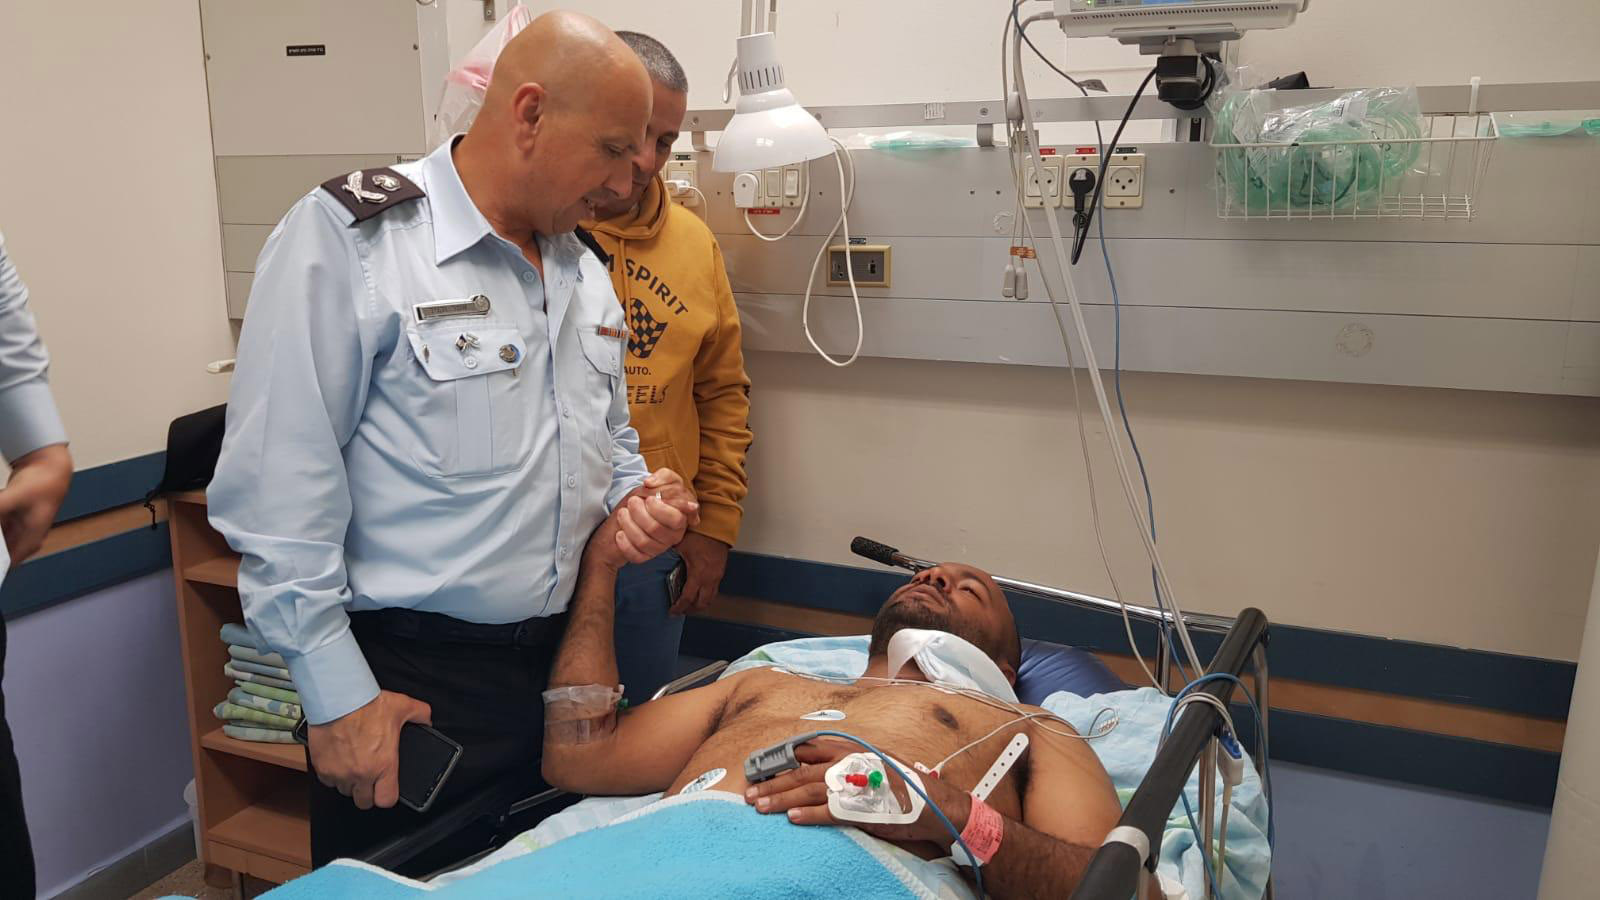 ממלא מקום הנציב, גונדר אשר וקנין, ביקר הלילה בבית חולים סורוקה את קצין שב״ס שהותקף על ידי אסיר ביטחוני בבית סוהר קציעות. (צילום: דוברות שב״ס)